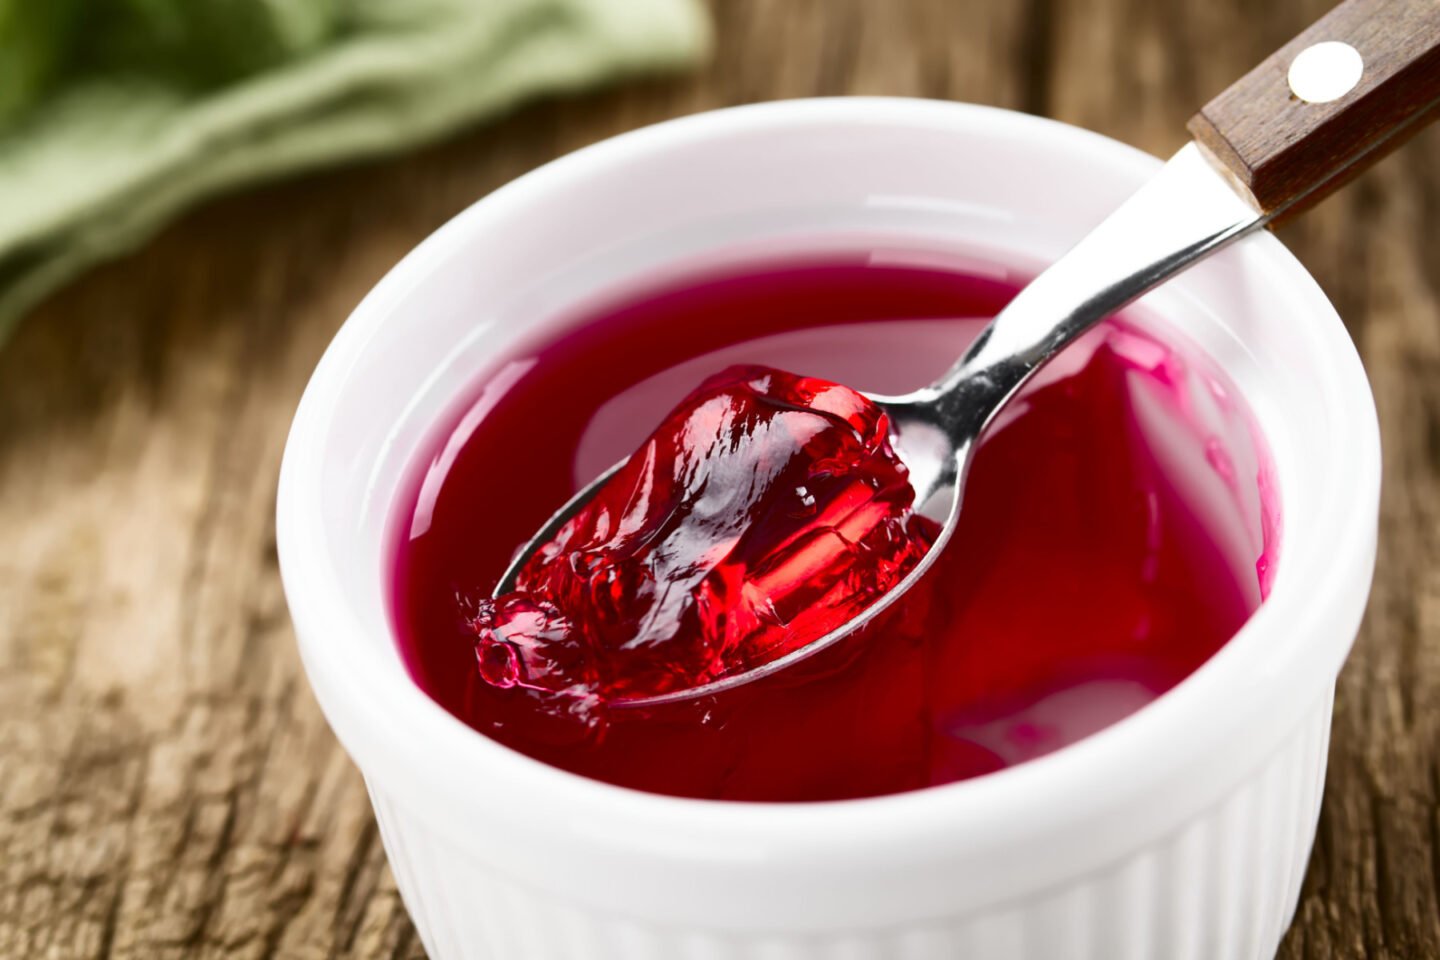 red jelly or jello in a ramekin